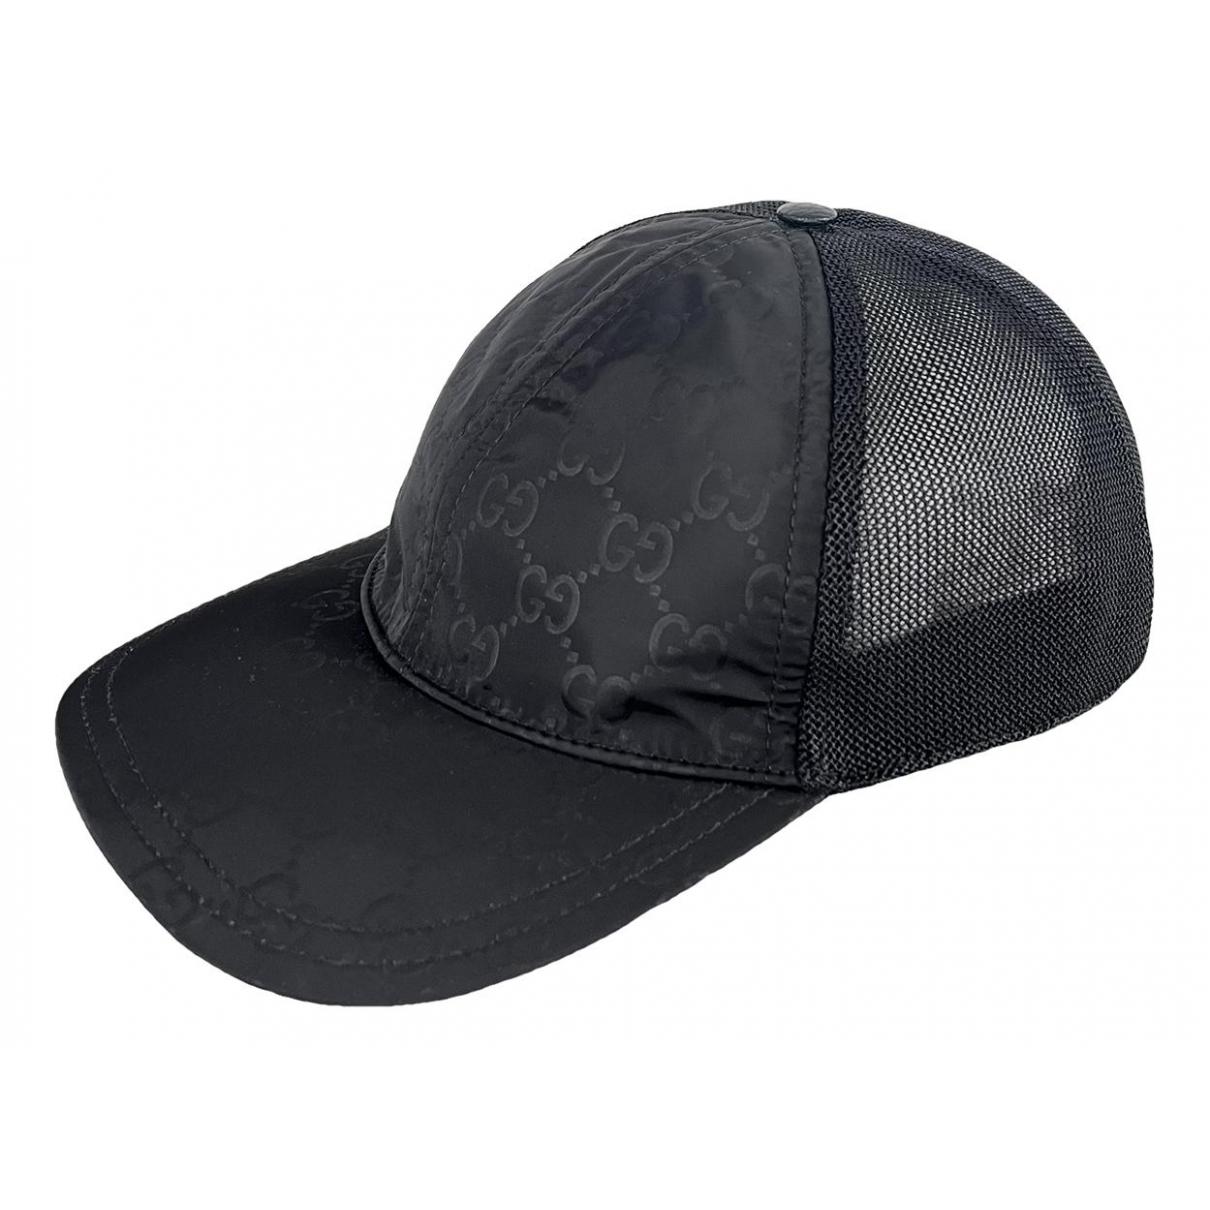 Hat Saint Laurent Black size S International in Cotton - 36539506